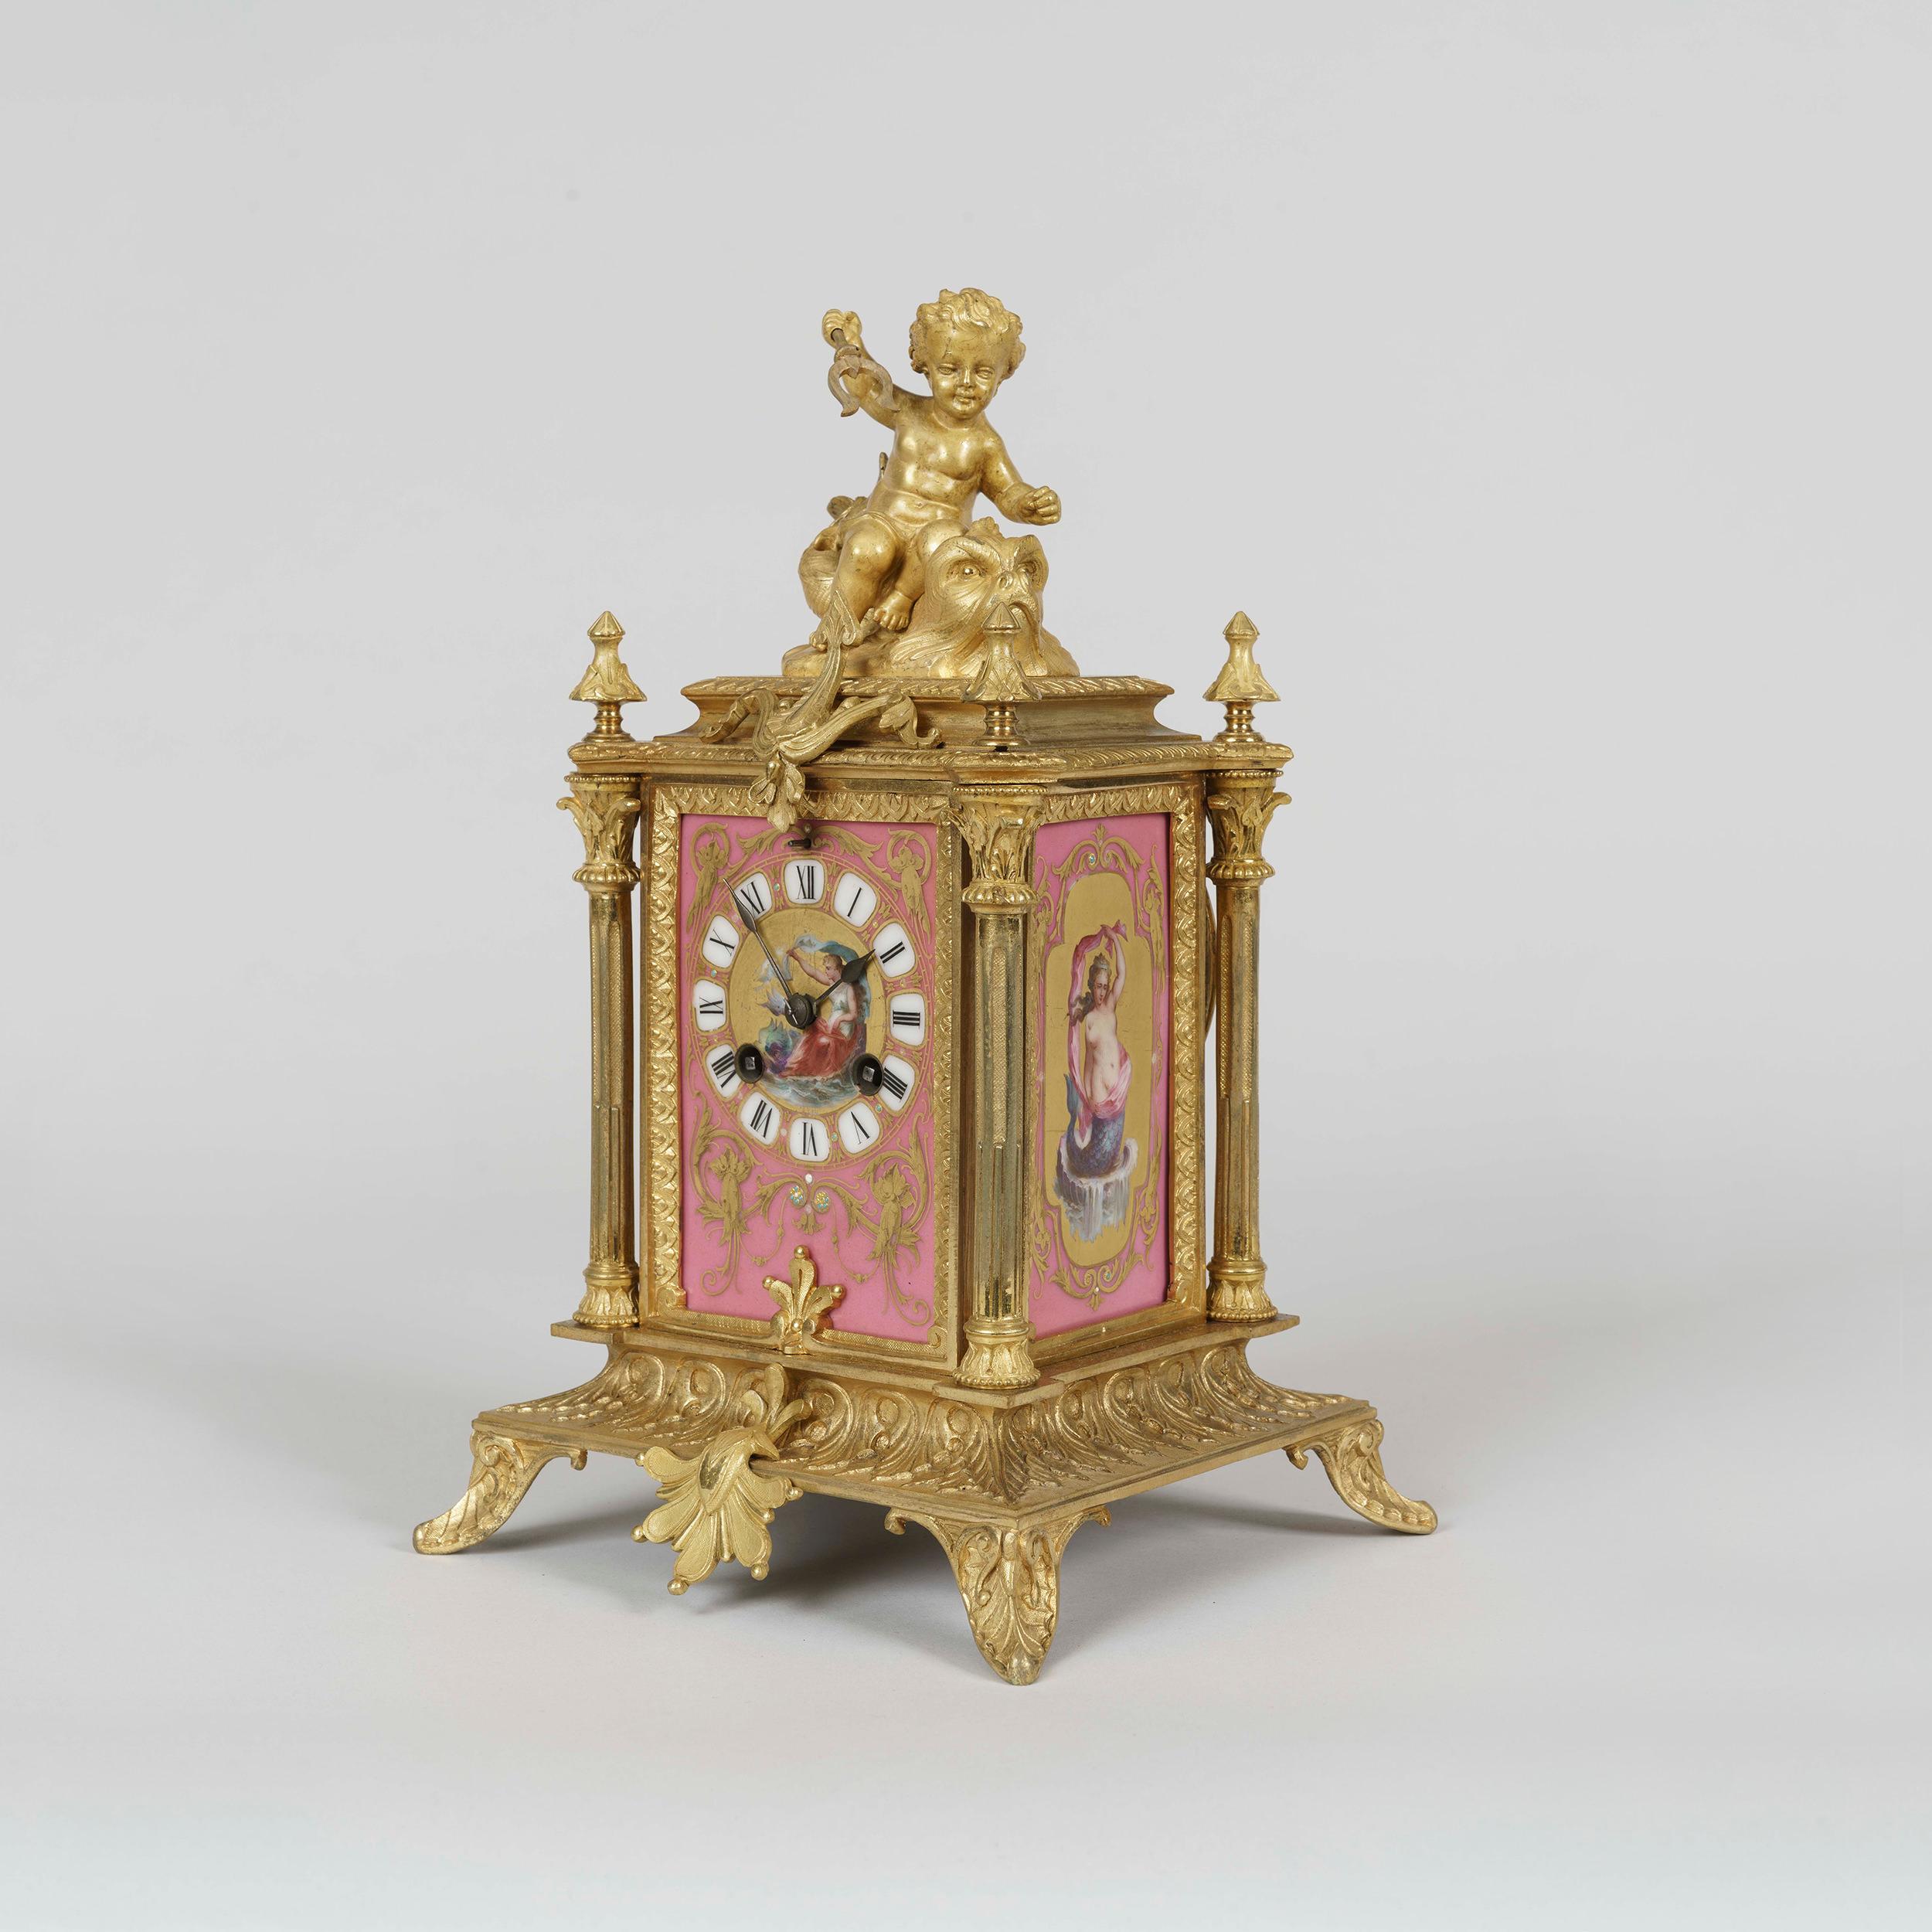 Eine Tischuhr im Louis XVI-Stil
Von Japy Frères

Das fein ziselierte Ormolu-Gehäuse ist mit rosafarbenen, handdekorierten polychromen Tafeln im Sèvres-Stil auf dem Zifferblatt und den Seiten versehen, die Venus bzw. Nereiden darstellen; die Uhr